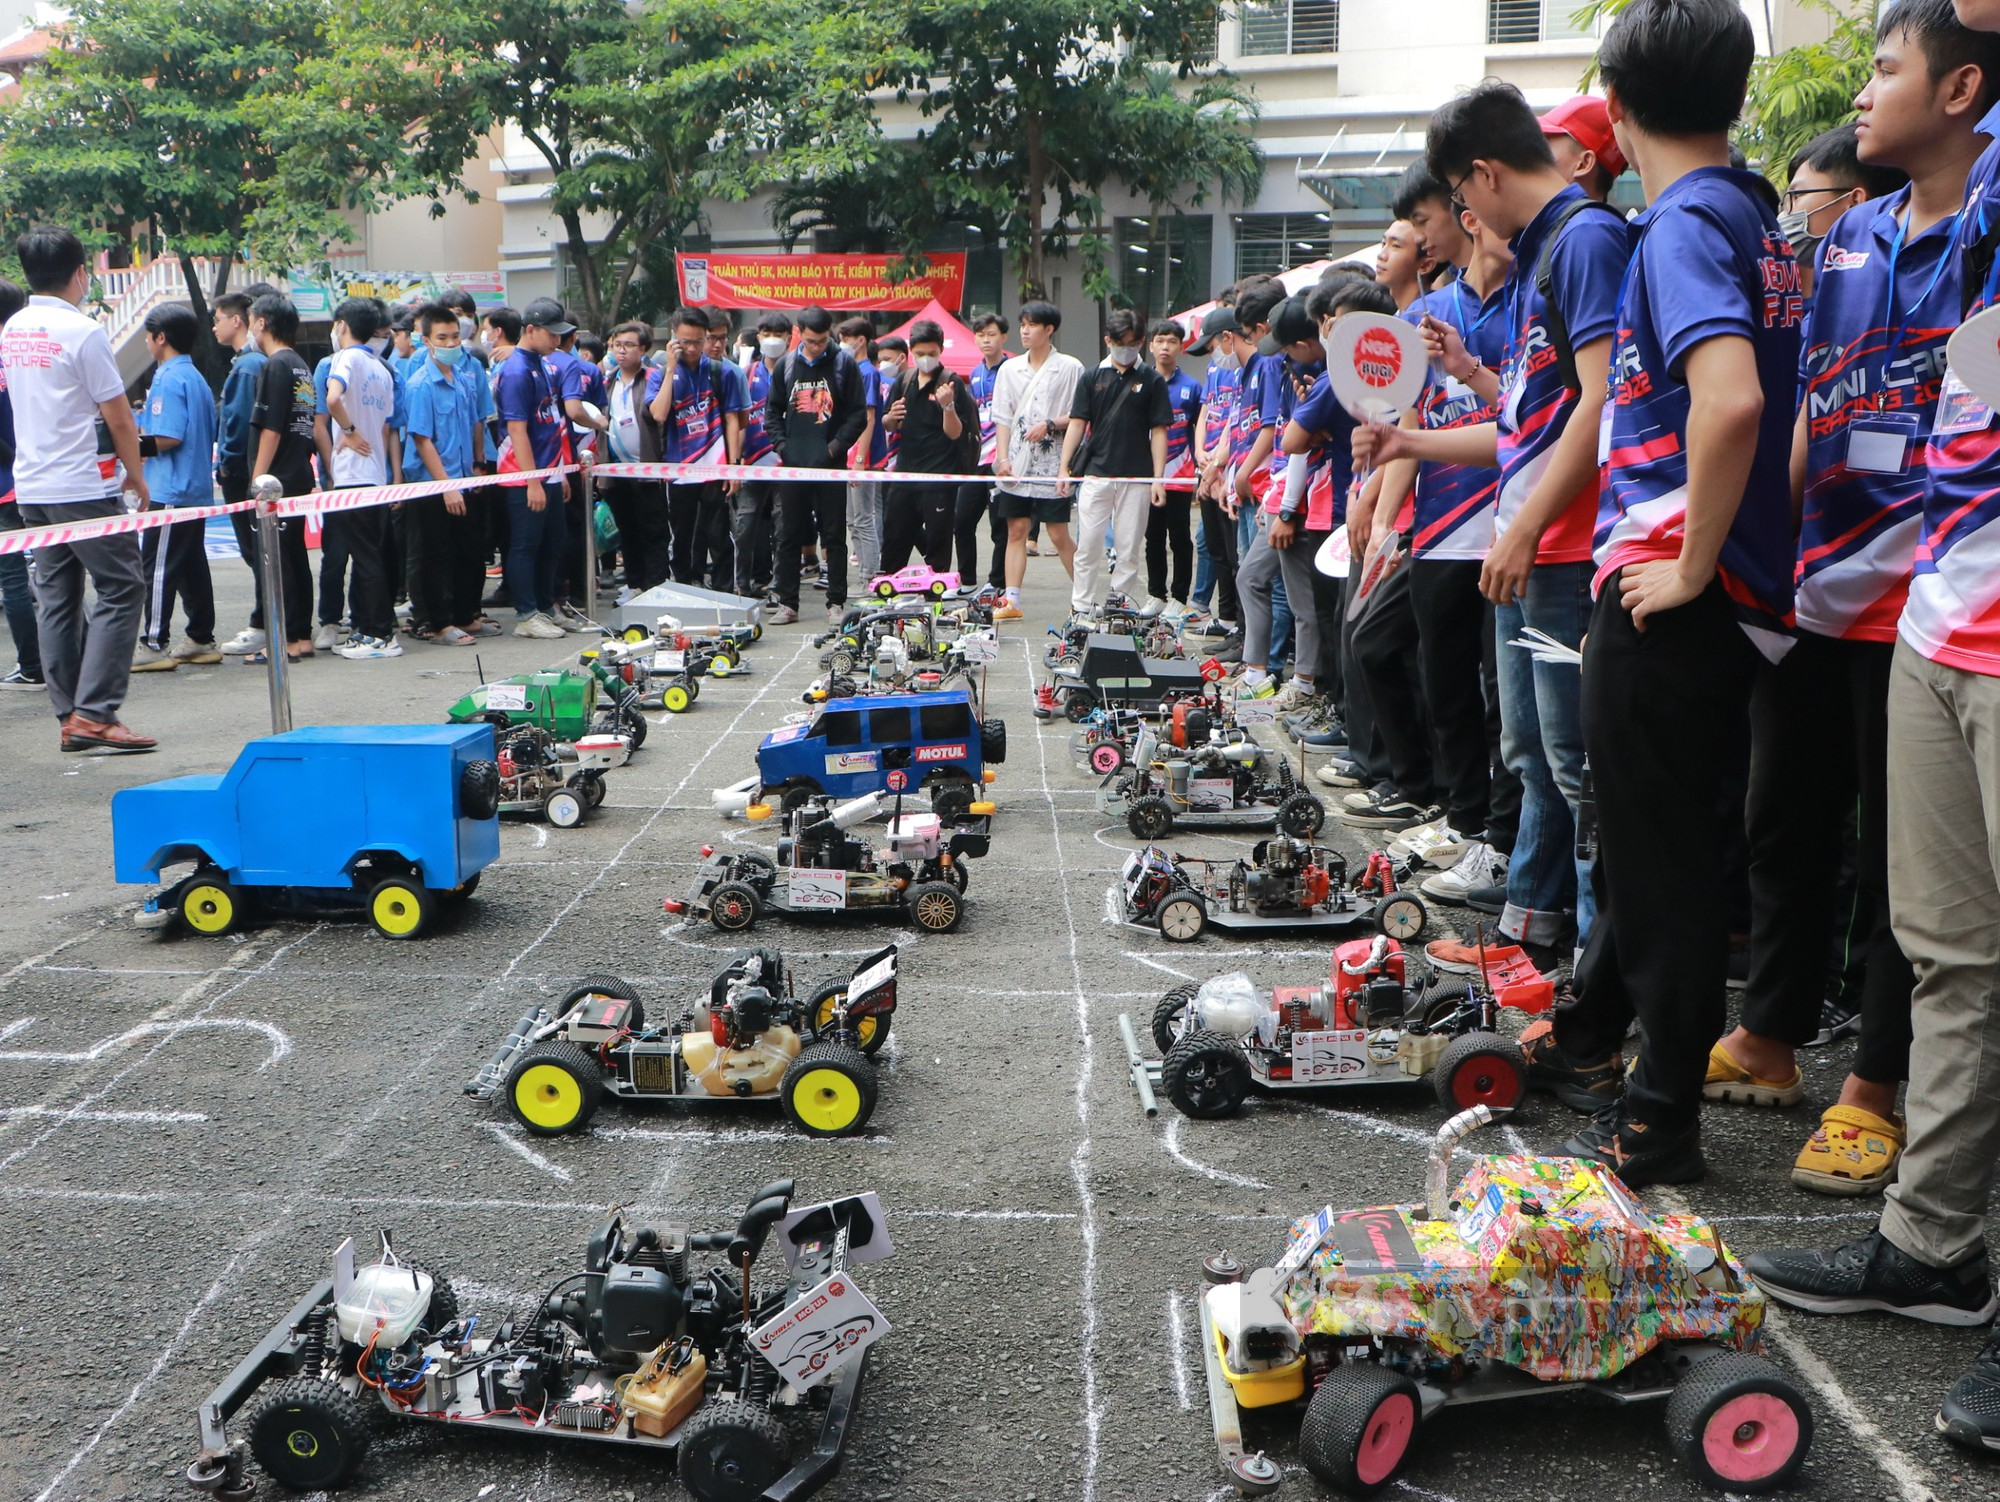 Hàng trăm sinh viên tham gia cuộc đua xe mô hình tự chế: Hưởng ứng phong trào giảm thiểu rác thải nhựa  - Ảnh 1.